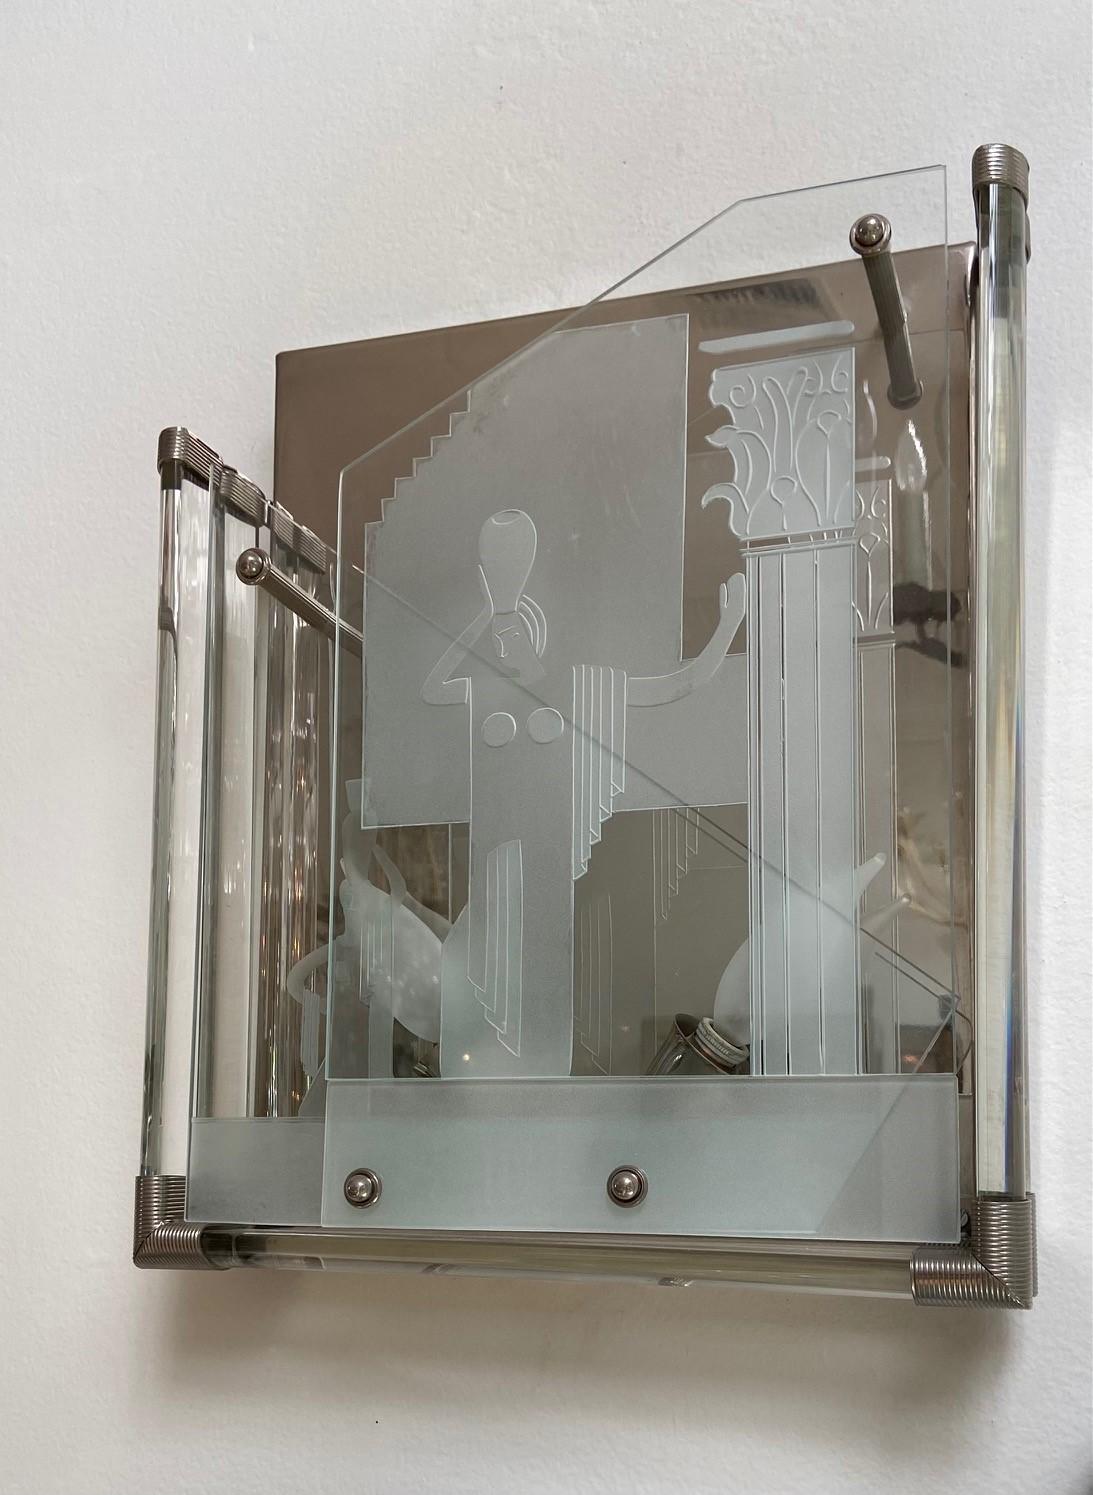 Paire d'appliques en verre de Murano de style Art Déco italien rare et signé S.A.L.I.R., corps en verre transparent gravé d'une femme, deux douilles d'ampoule de candélabre, plaque arrière plaquée argent, mesures : 13 